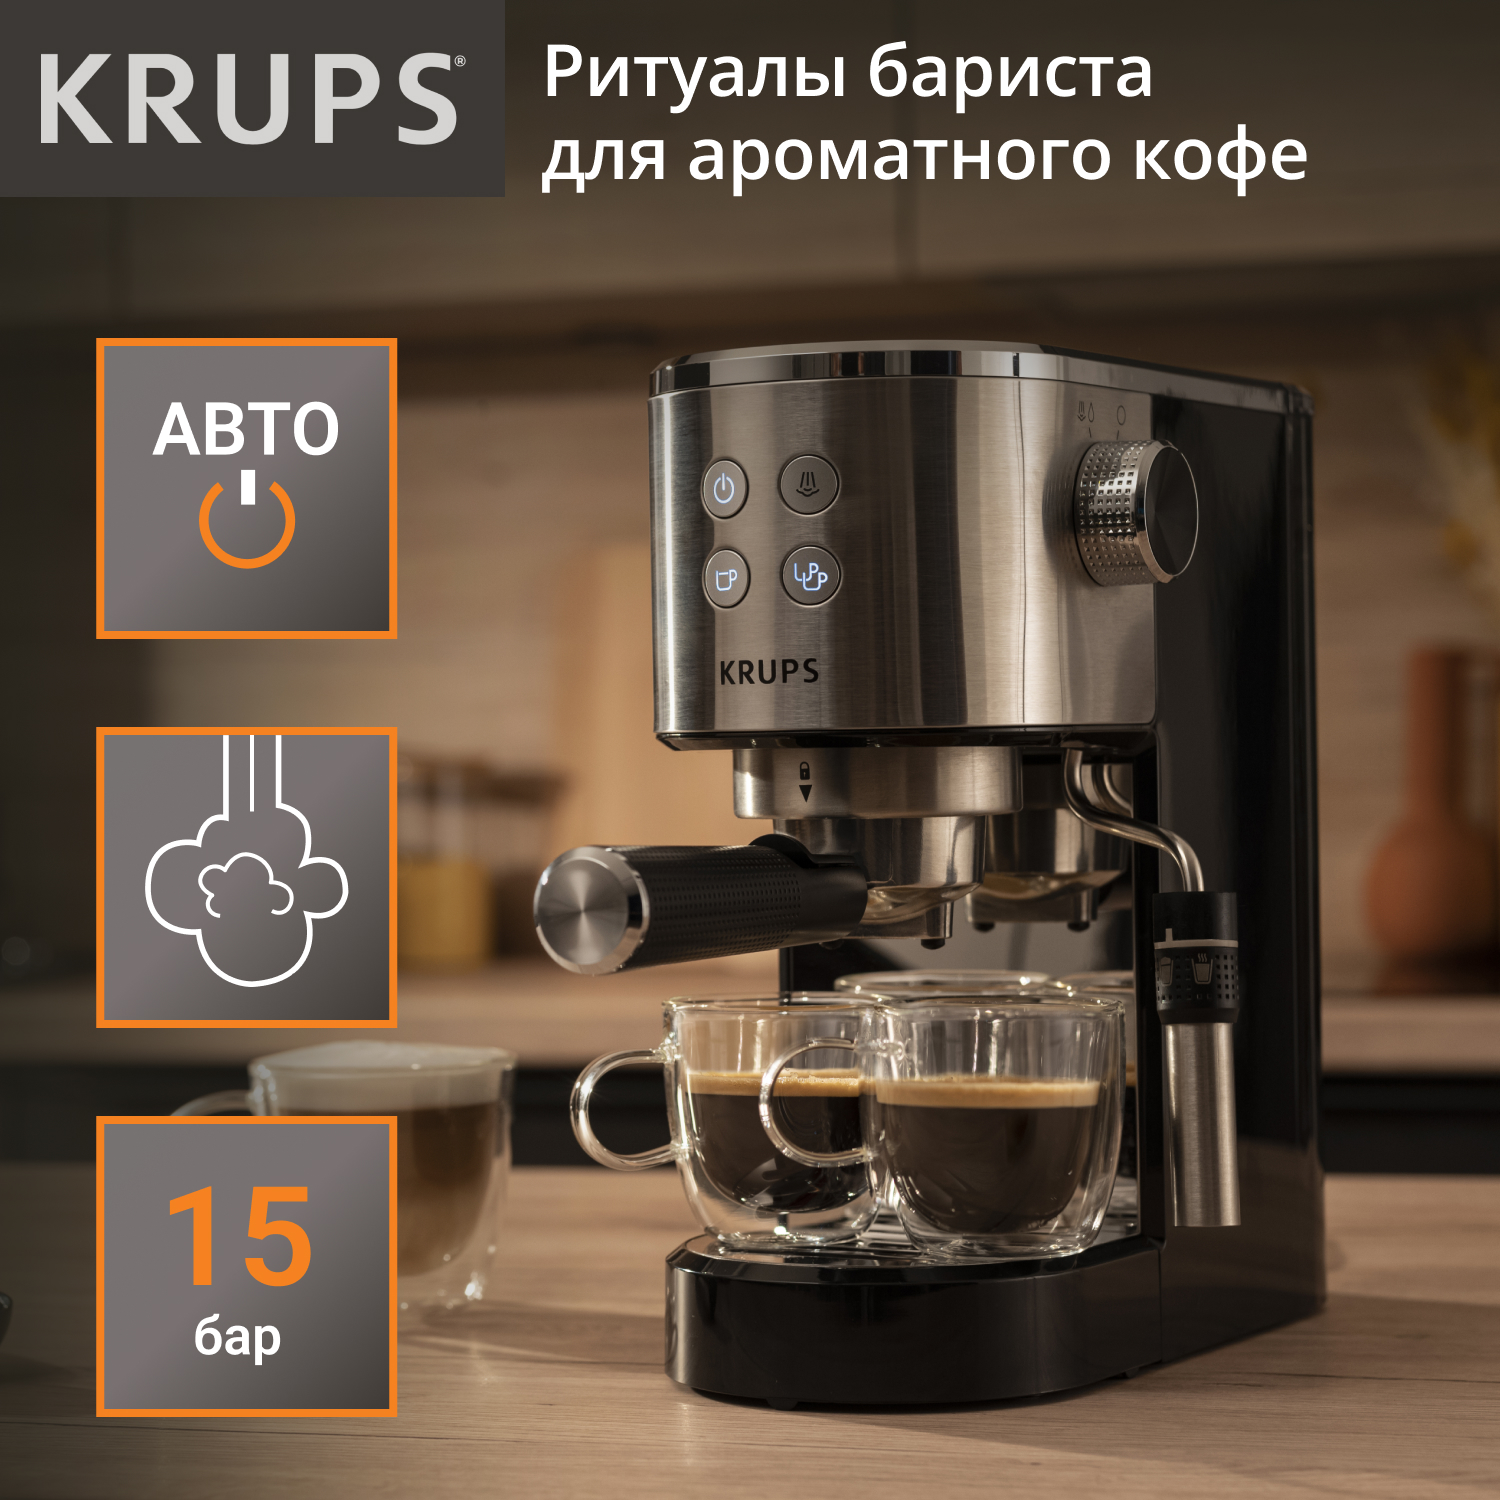 Рожковая кофеварка KRUPS XP444C10 серебристая, черная рожковая кофеварка ariete 1381 12 черная